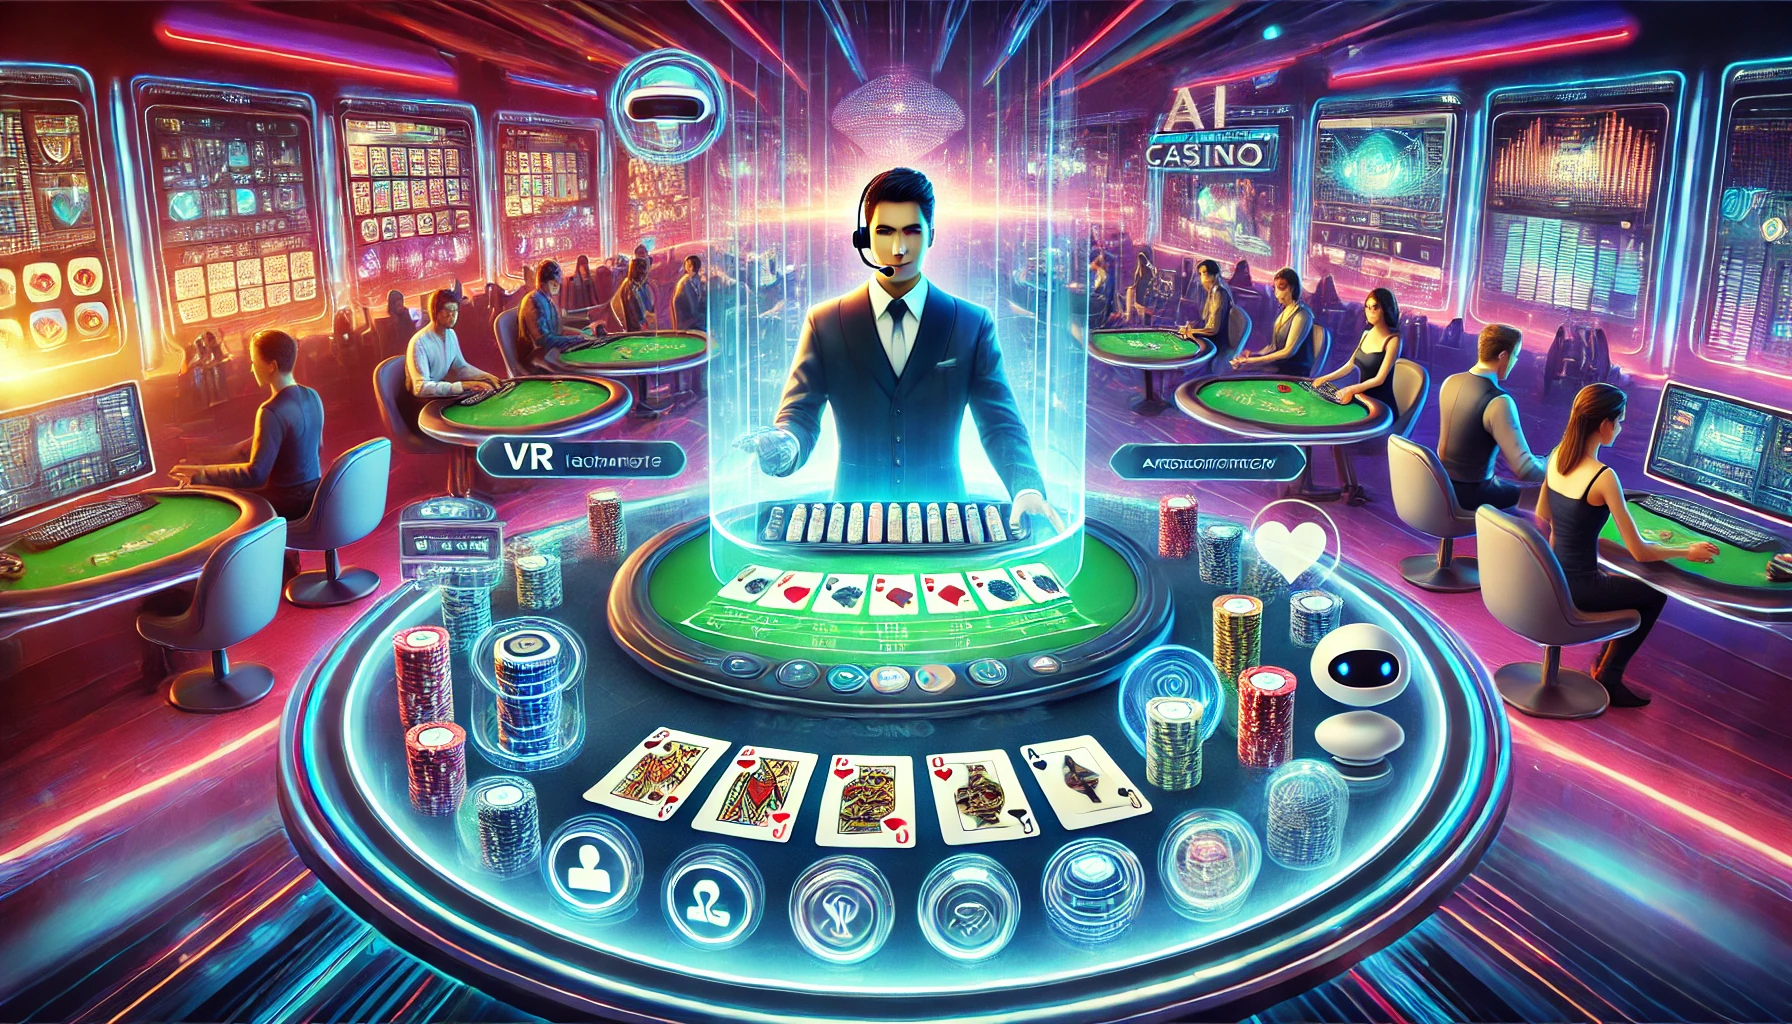 Future of Live Casino Games